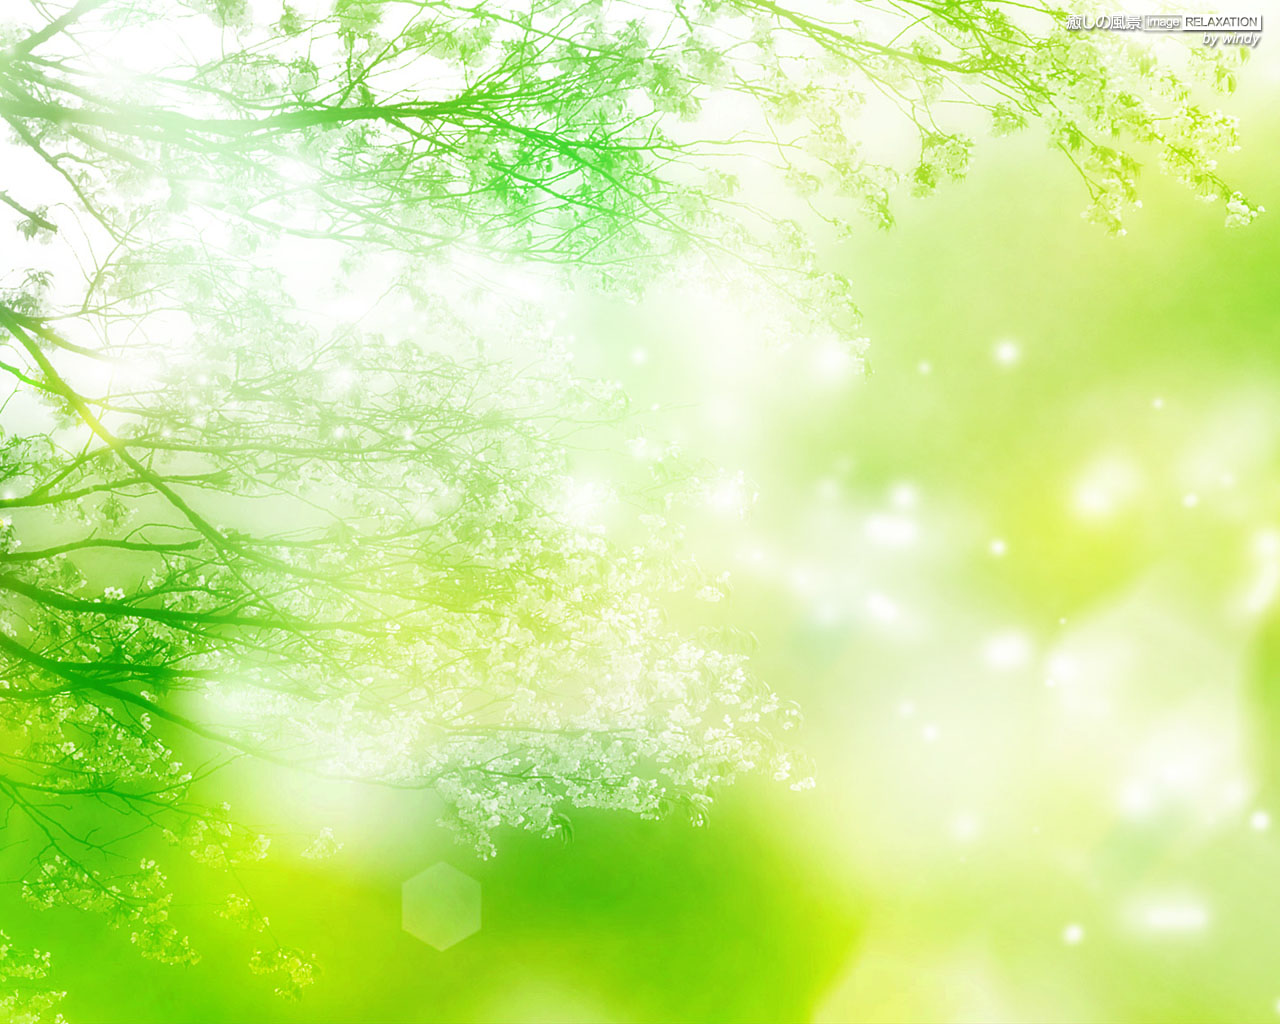 癒しの風景 Image Relaxation 癒し壁紙 緑の輝き